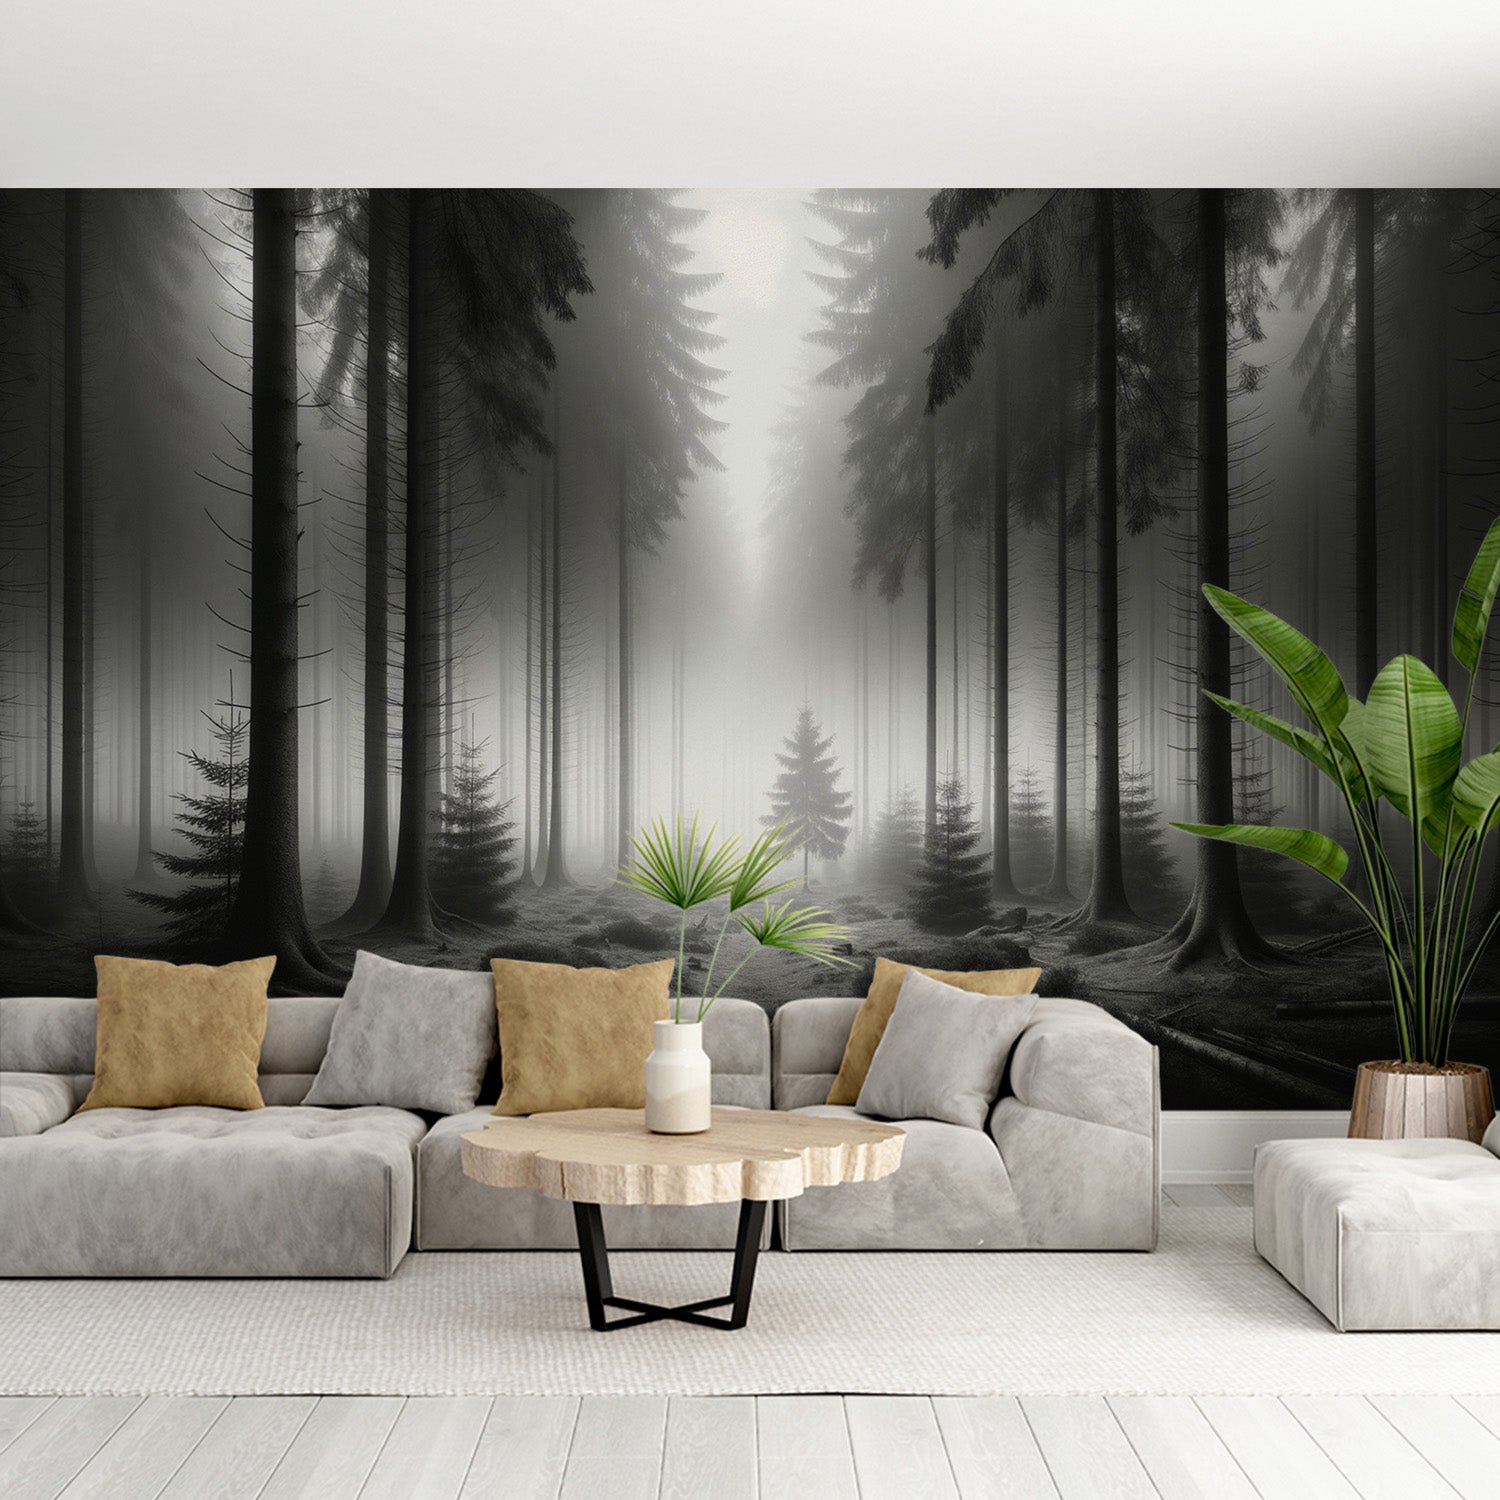  Papier peint forêt Brume mystérieuse parmi de grands conifères en noir et blanc